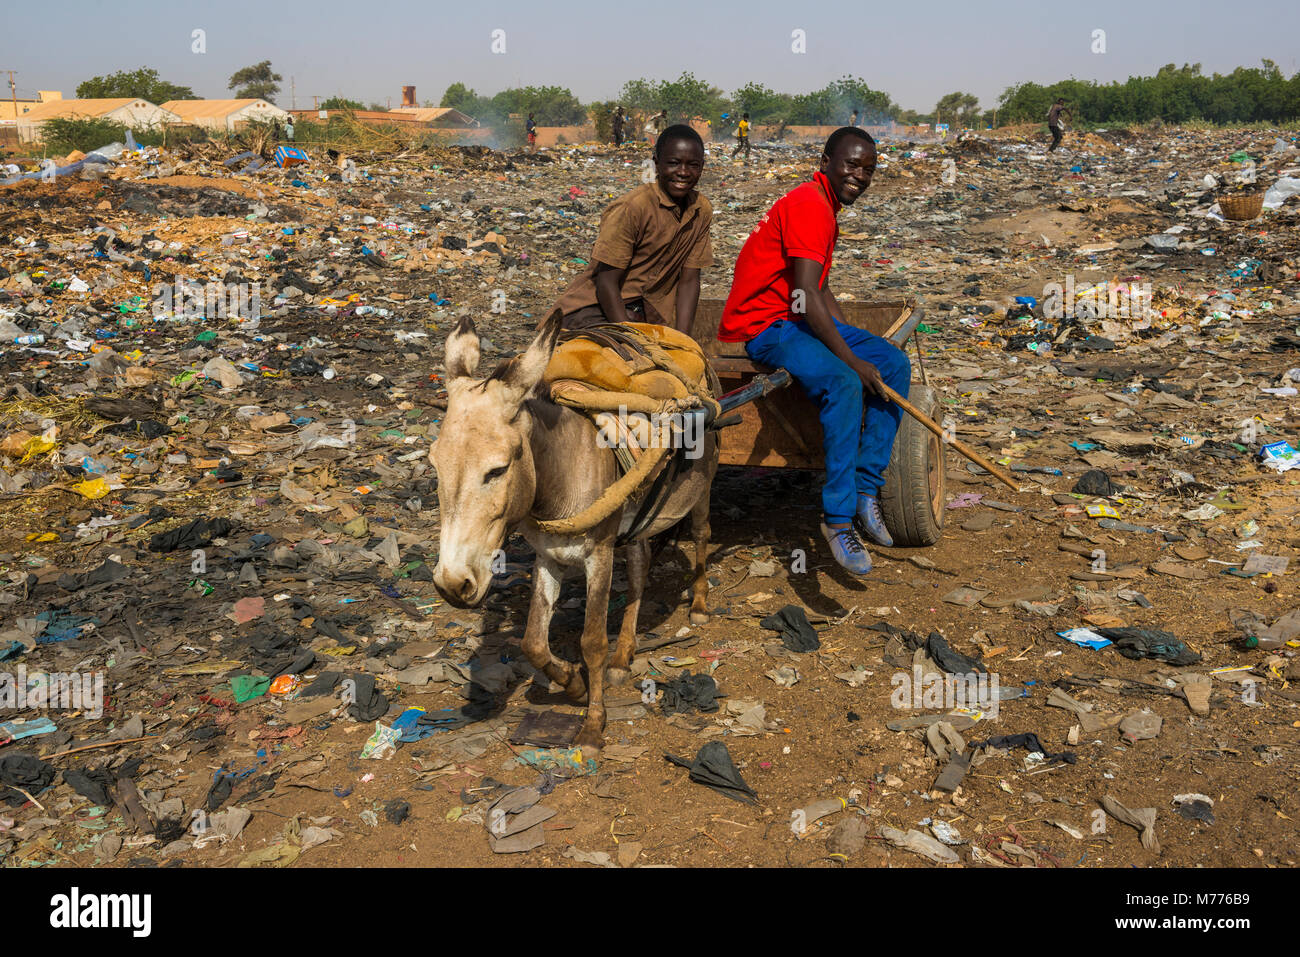 Friendly garçons sur un rubbishdump, Niamey, Niger, Afrique Banque D'Images